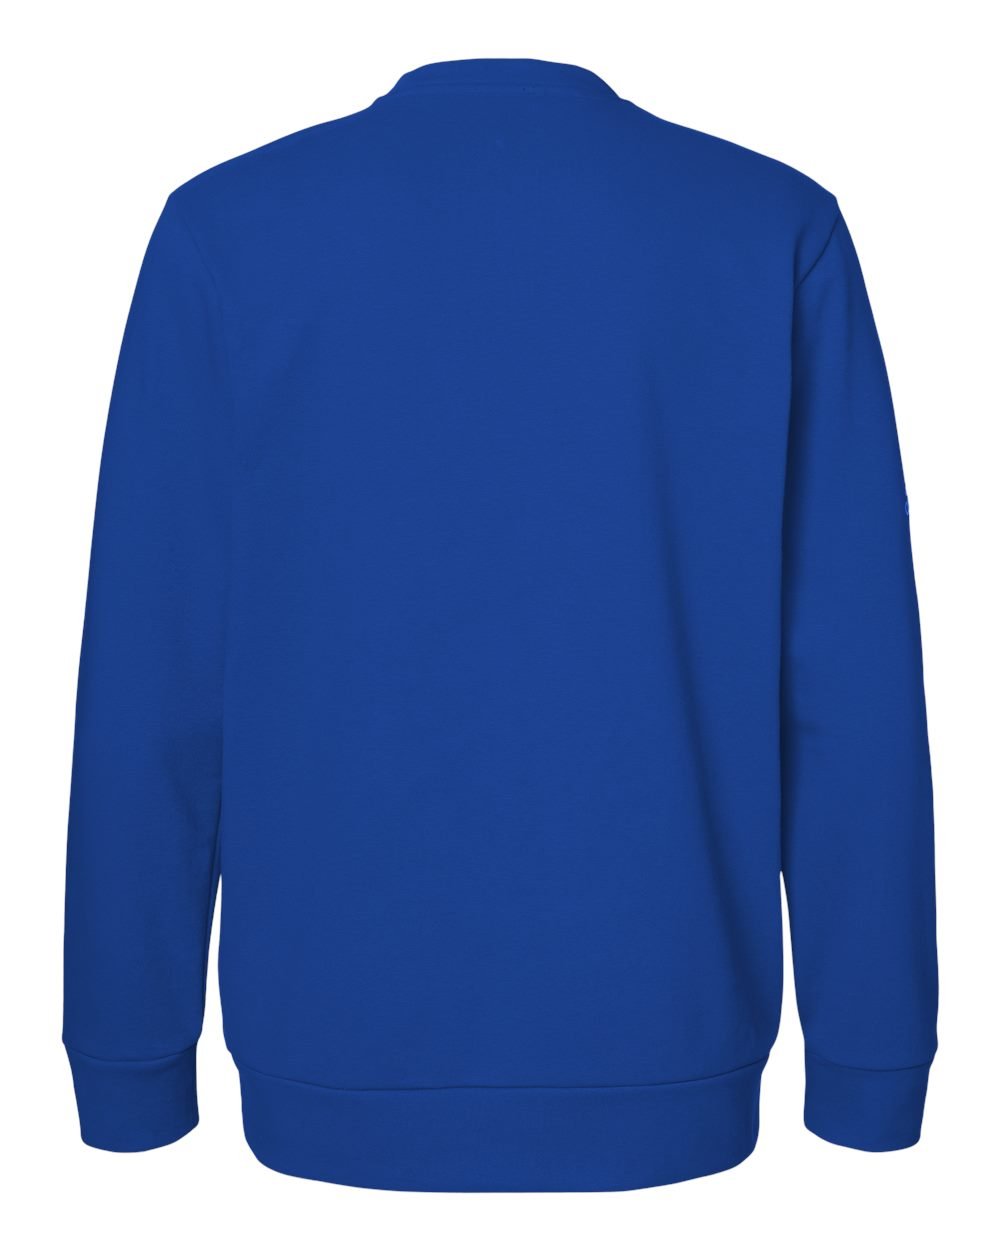 Adidas A434 Fleece Crewneck Sweatshirt #color_Collegiate Royal